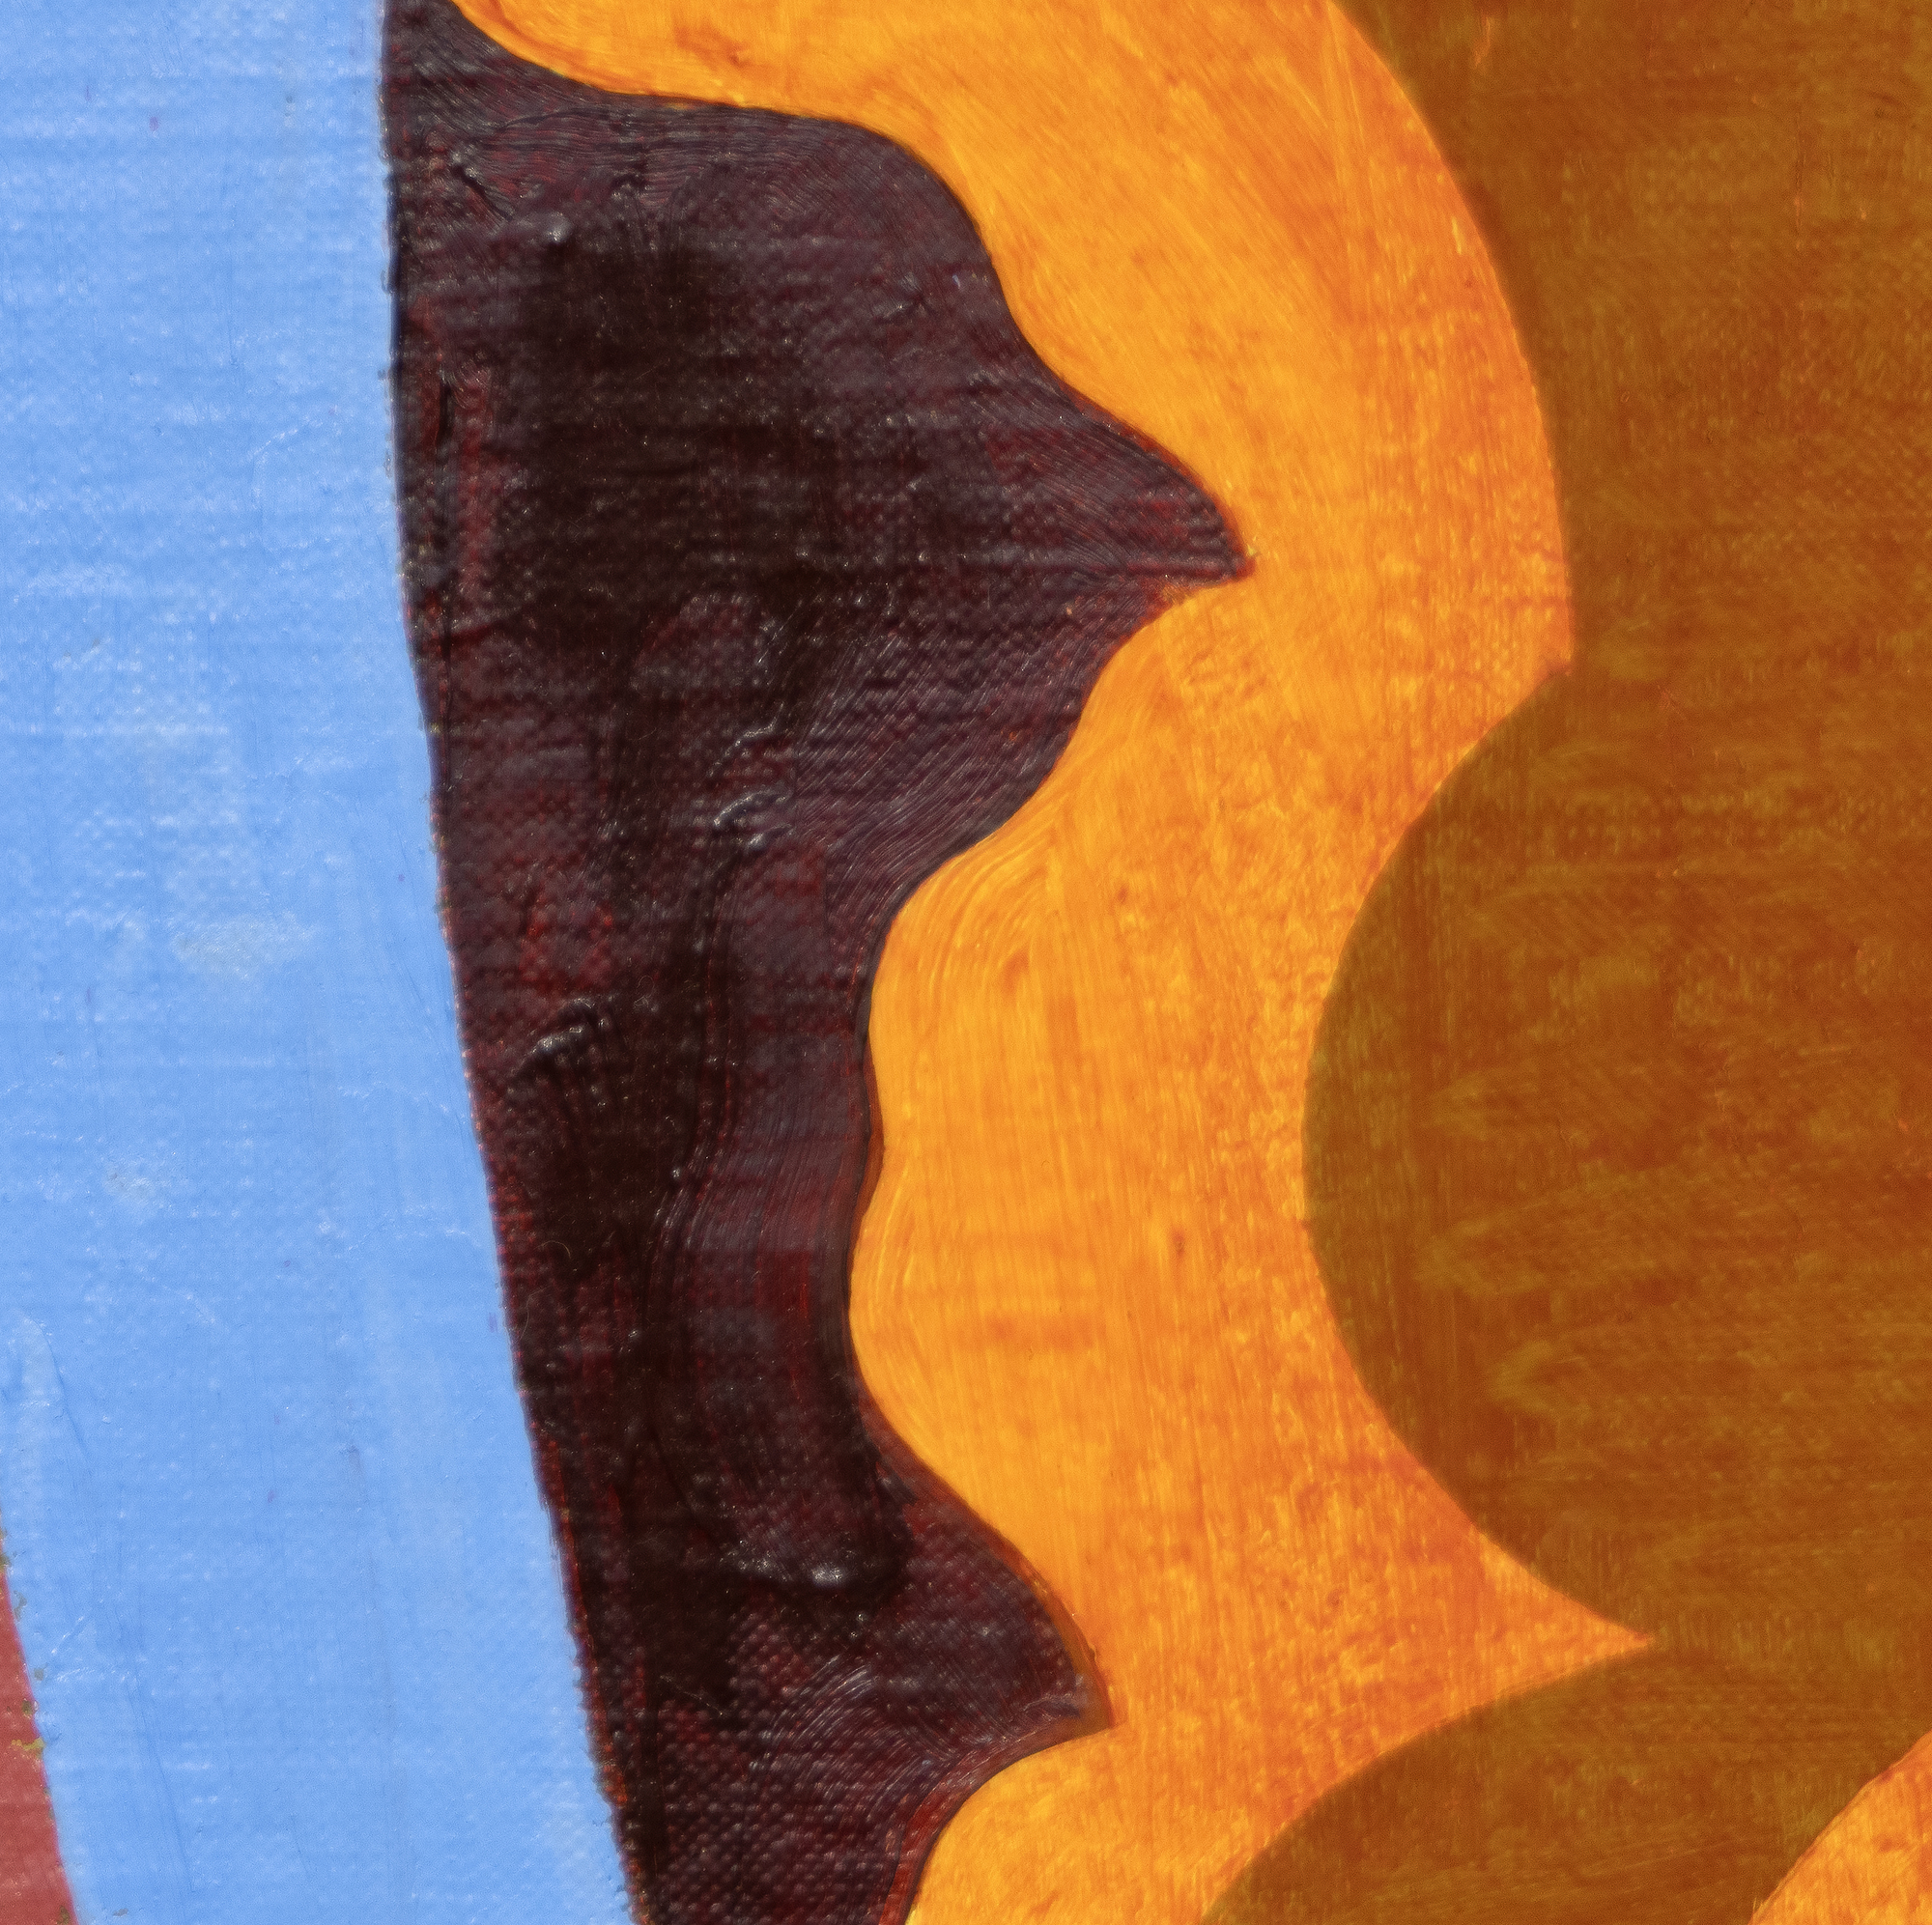 Der 1944 geborene Thomas Nozkowski schuf kleine, farbenprächtige Gemälde, die die gegensätzlichen Einflüsse der Abstrakten Expressionisten und Bauhaus-Flüchtlinge widerspiegeln, bei denen er an der Cooper Union studierte. Er verwendet einen kleinen Pinsel und schabt und reibt die Farbe auf eine Art und Weise ab, die sich im fertigen Werk niederschlägt. Er entwickelte ein unverwechselbares, breit gefächertes Vokabular, in dem er biomorph anmutende geometrische Formen in unterschiedlichen Farbschemata und einer Vielzahl von Assoziationen einsetzt: von Fliesenböden über Zellcluster bis hin zu Architektur und Weltraum. Oft sind sie aus seinen eigenen Erinnerungen und Erfahrungen destilliert. Nozkowski kommentierte dieses spezielle Gemälde (Ohne Titel, 1994) mit den Worten, dass es seine Faszination für die mythologischen Szenen widerspiegelt, die auf die Kassettentruhen der Renaissance gemalt sind. Er bezeichnete es als das beste von drei oder vier 15" x 30" großen Tafeln dieser Serie. Nozkowski wurde viele Jahre lang von der Pace Gallery betreut. Er ist 2019 verstorben.